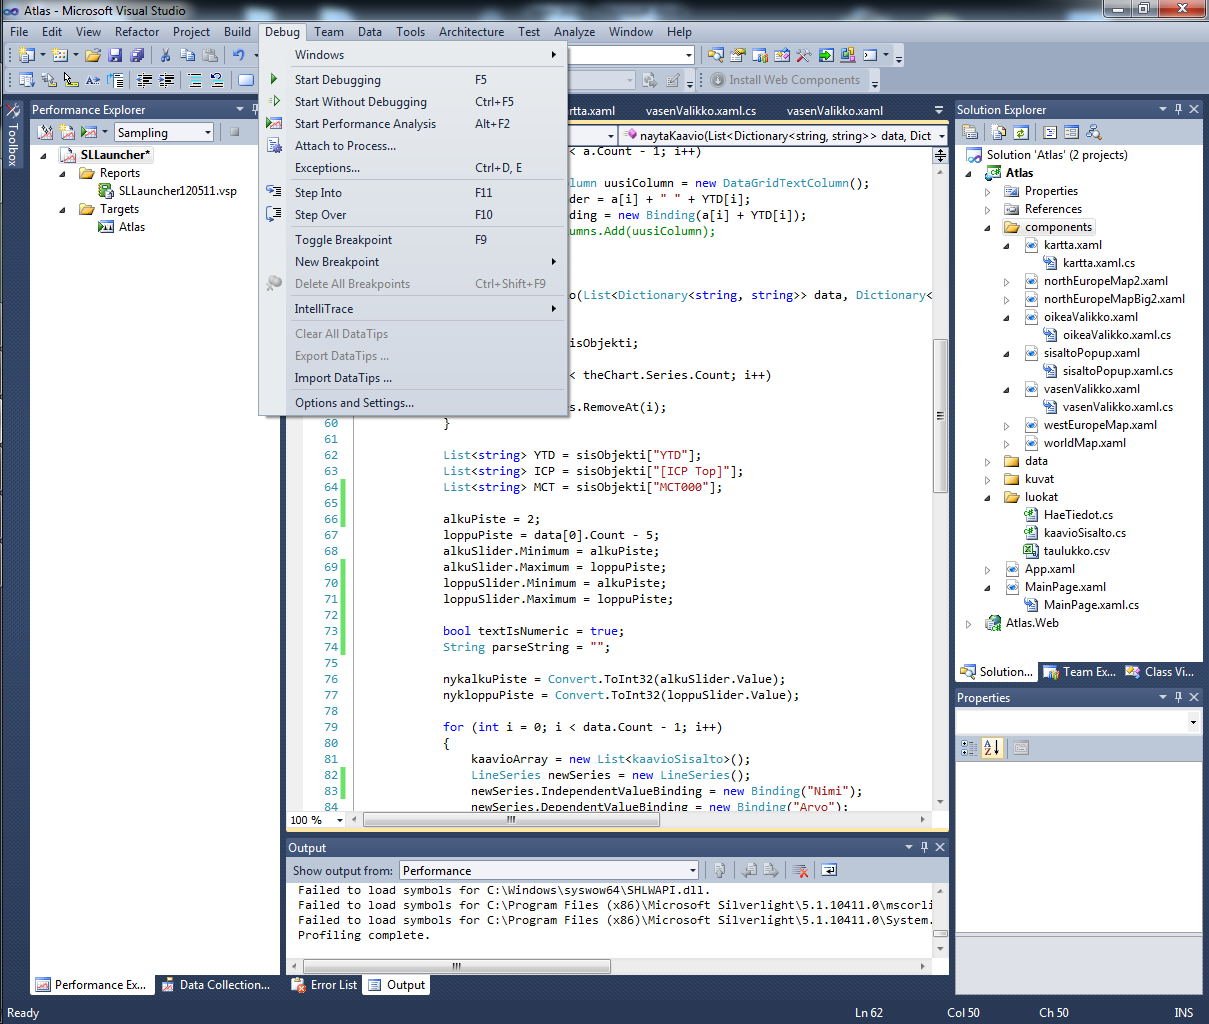 Kuva 12 Visual Studio - Debug-valikko Kuvassa 12 näkyy Debug-valikko avattuna. Tämä toimii esimerkkinä ohjelman ylävalikoiden toiminnasta.